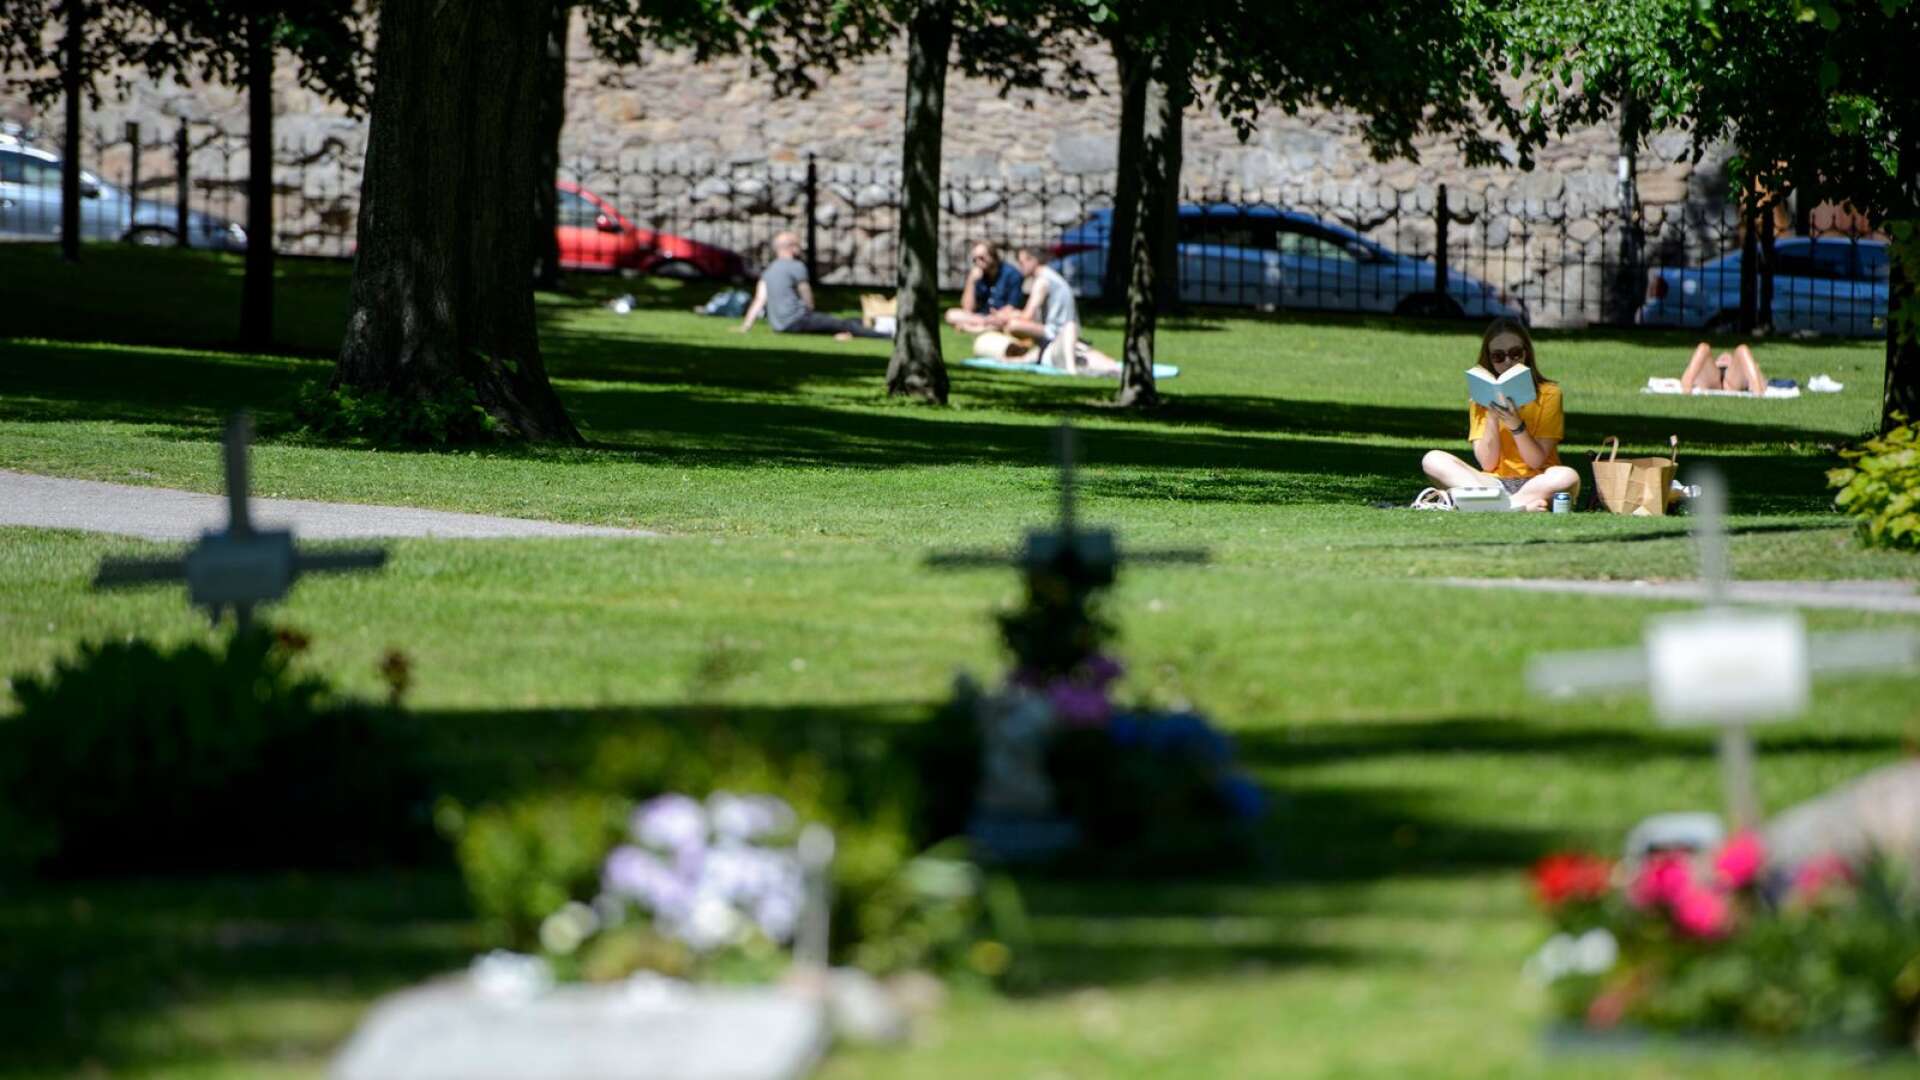 Om kyrkogårdar blir till picknickplatser är det troligtvis ett tecken på att det behövs fler grönytor som är lämpliga för att bre ut filtar och äta mat på, skriver Agnes Karnatz.